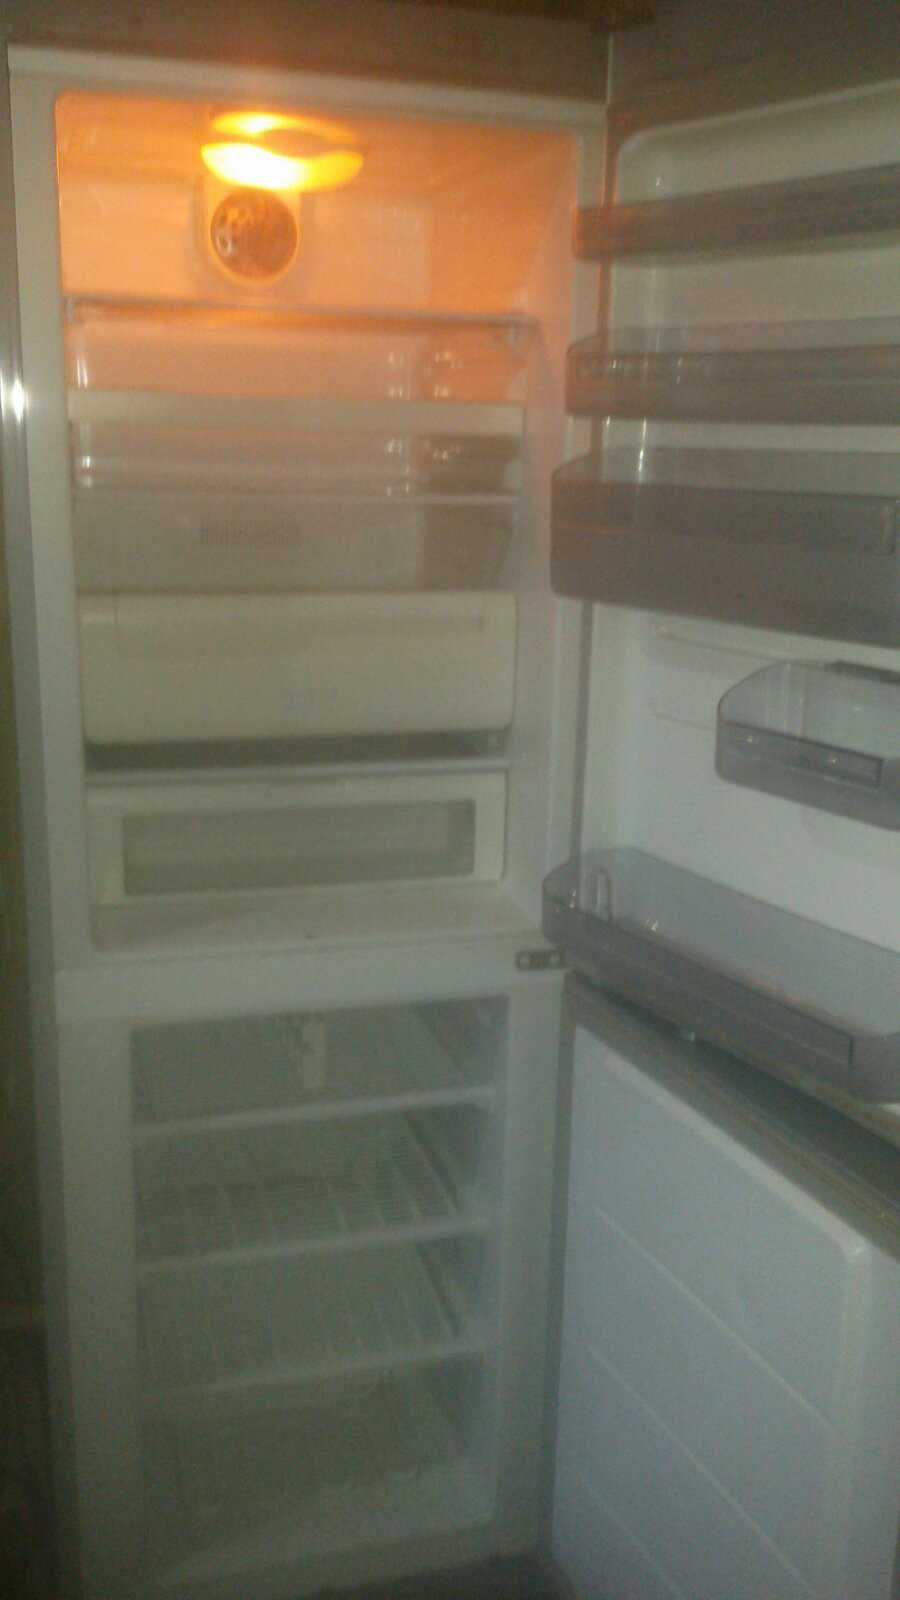 Продам холодильник Elge зеркальный